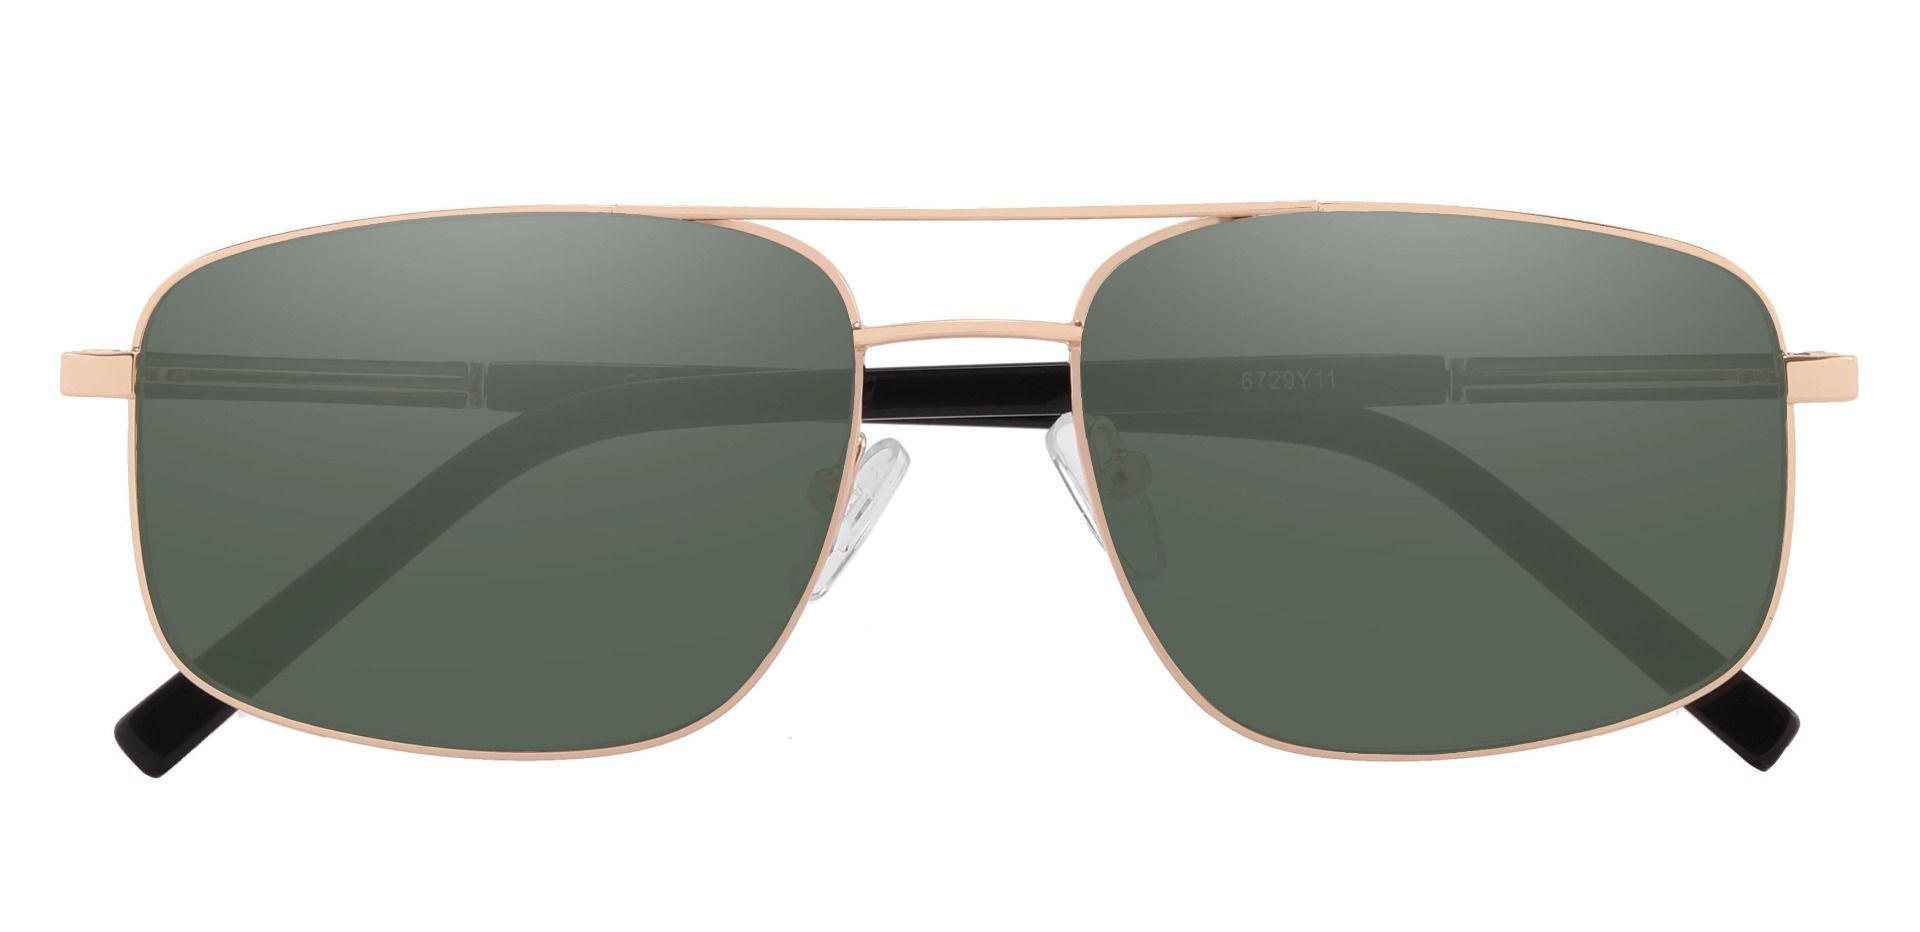 Davenport Aviator Reading Sunglasses - Gold Frame With Green Lenses